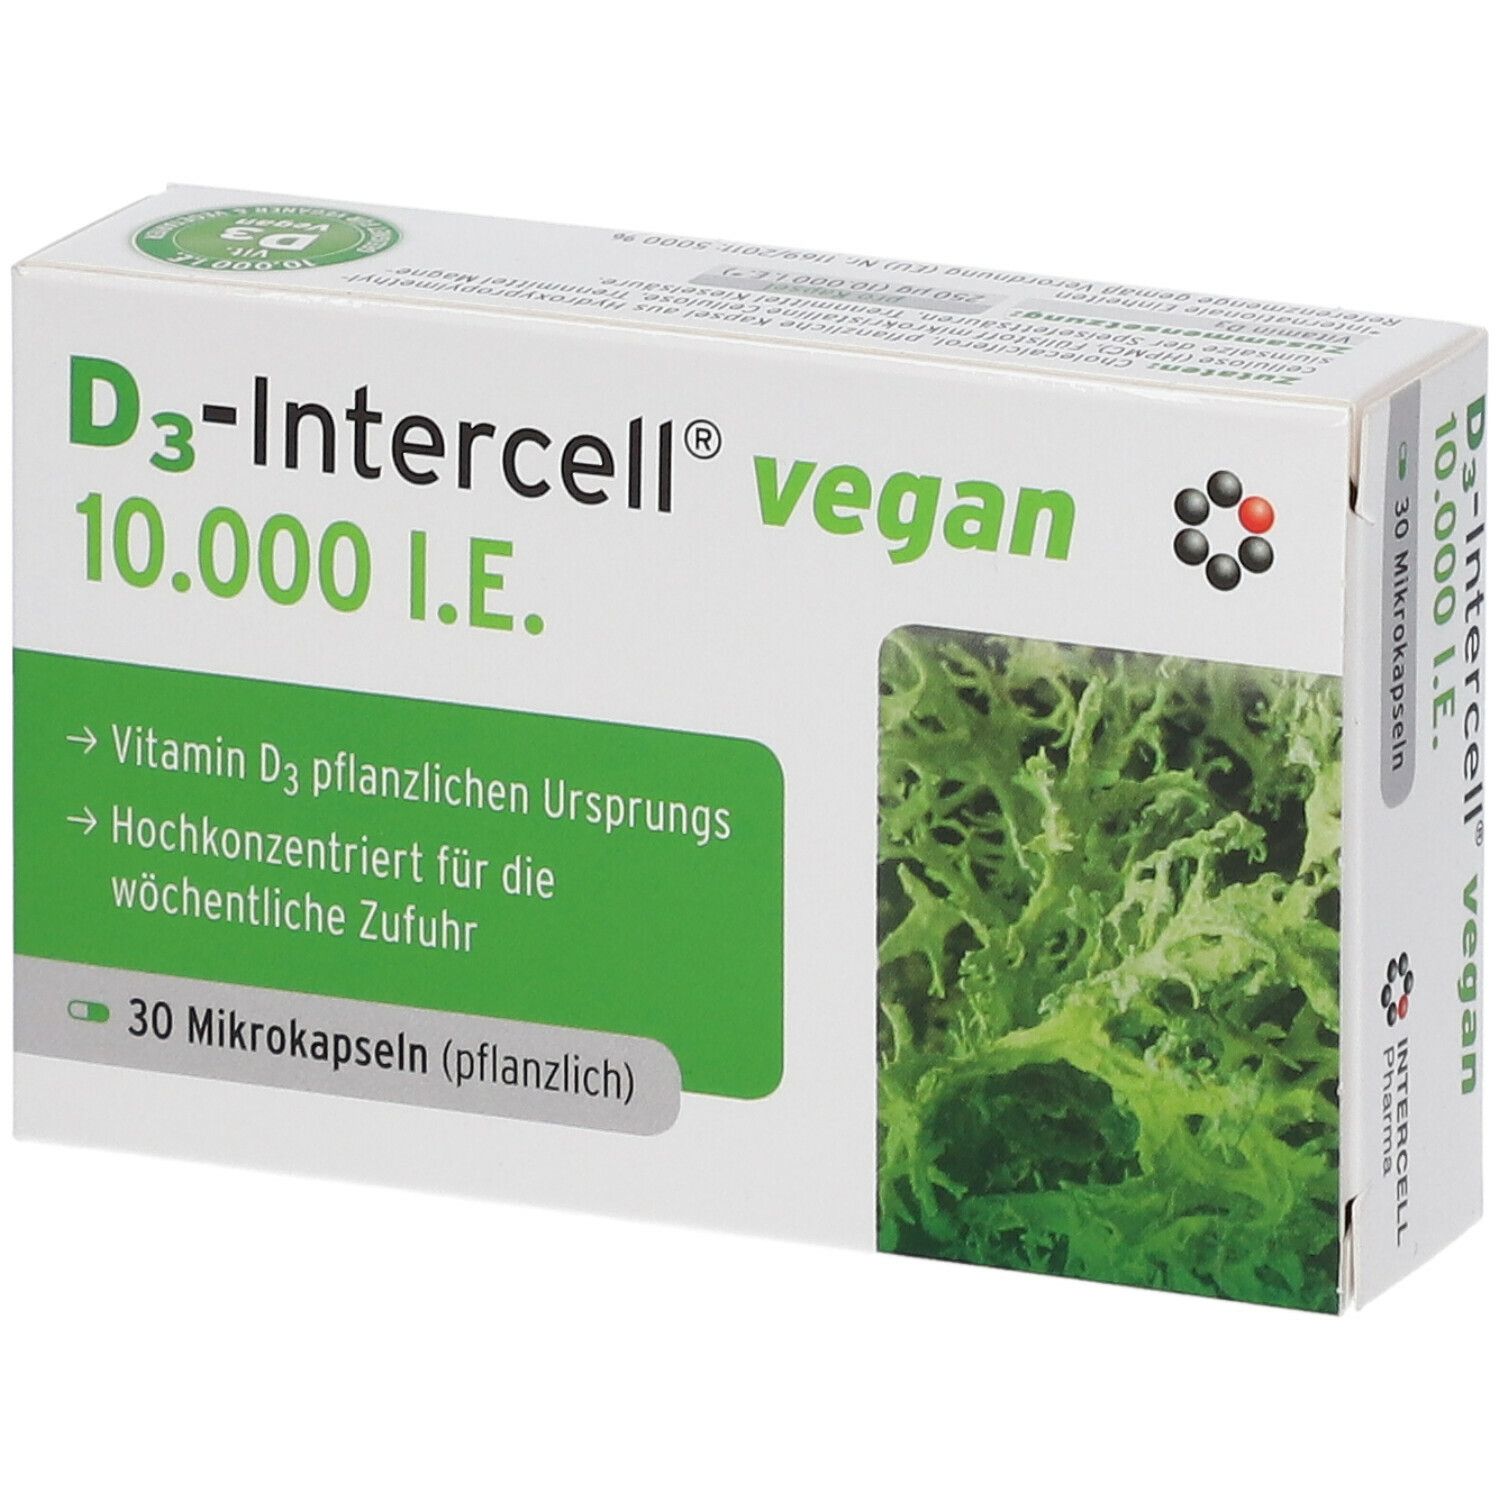 Image of D3-Intercell® Vegan 10.000 I.E.